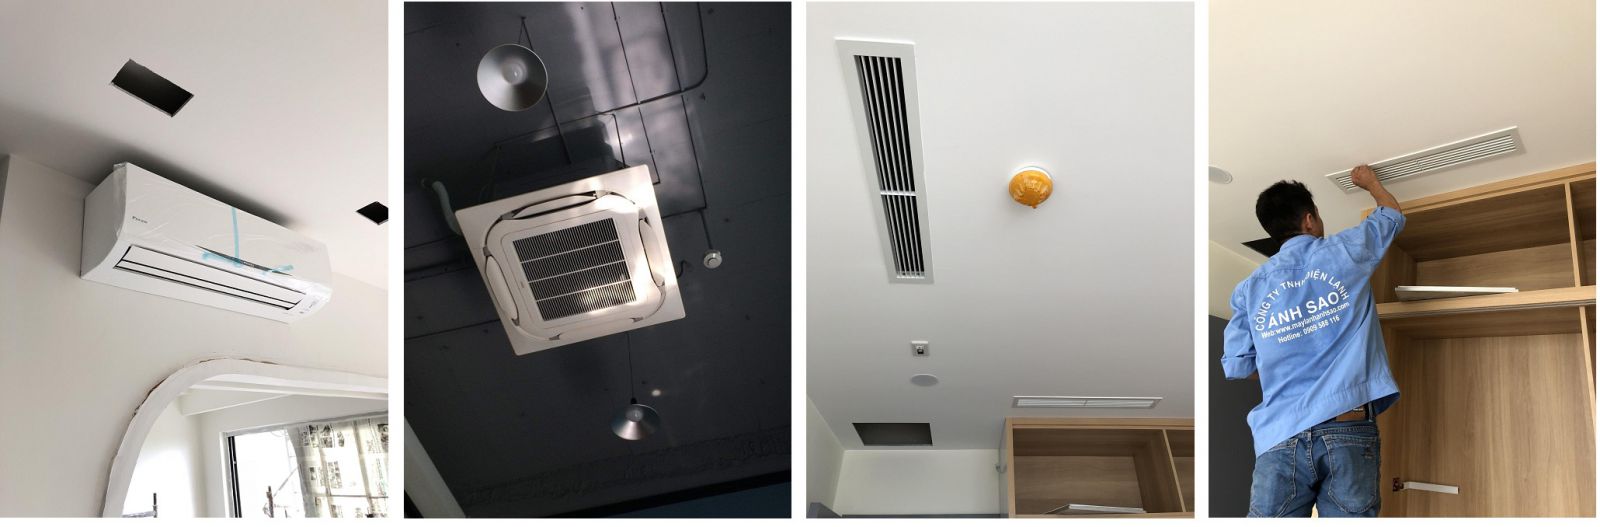 Chuyên gia giải pháp máy lạnh Multi cho căn hộ dân dụng,chung cư cao cấp – Cơ điện lạnh Ánh Sao 04e7dfc562c78599dcd6